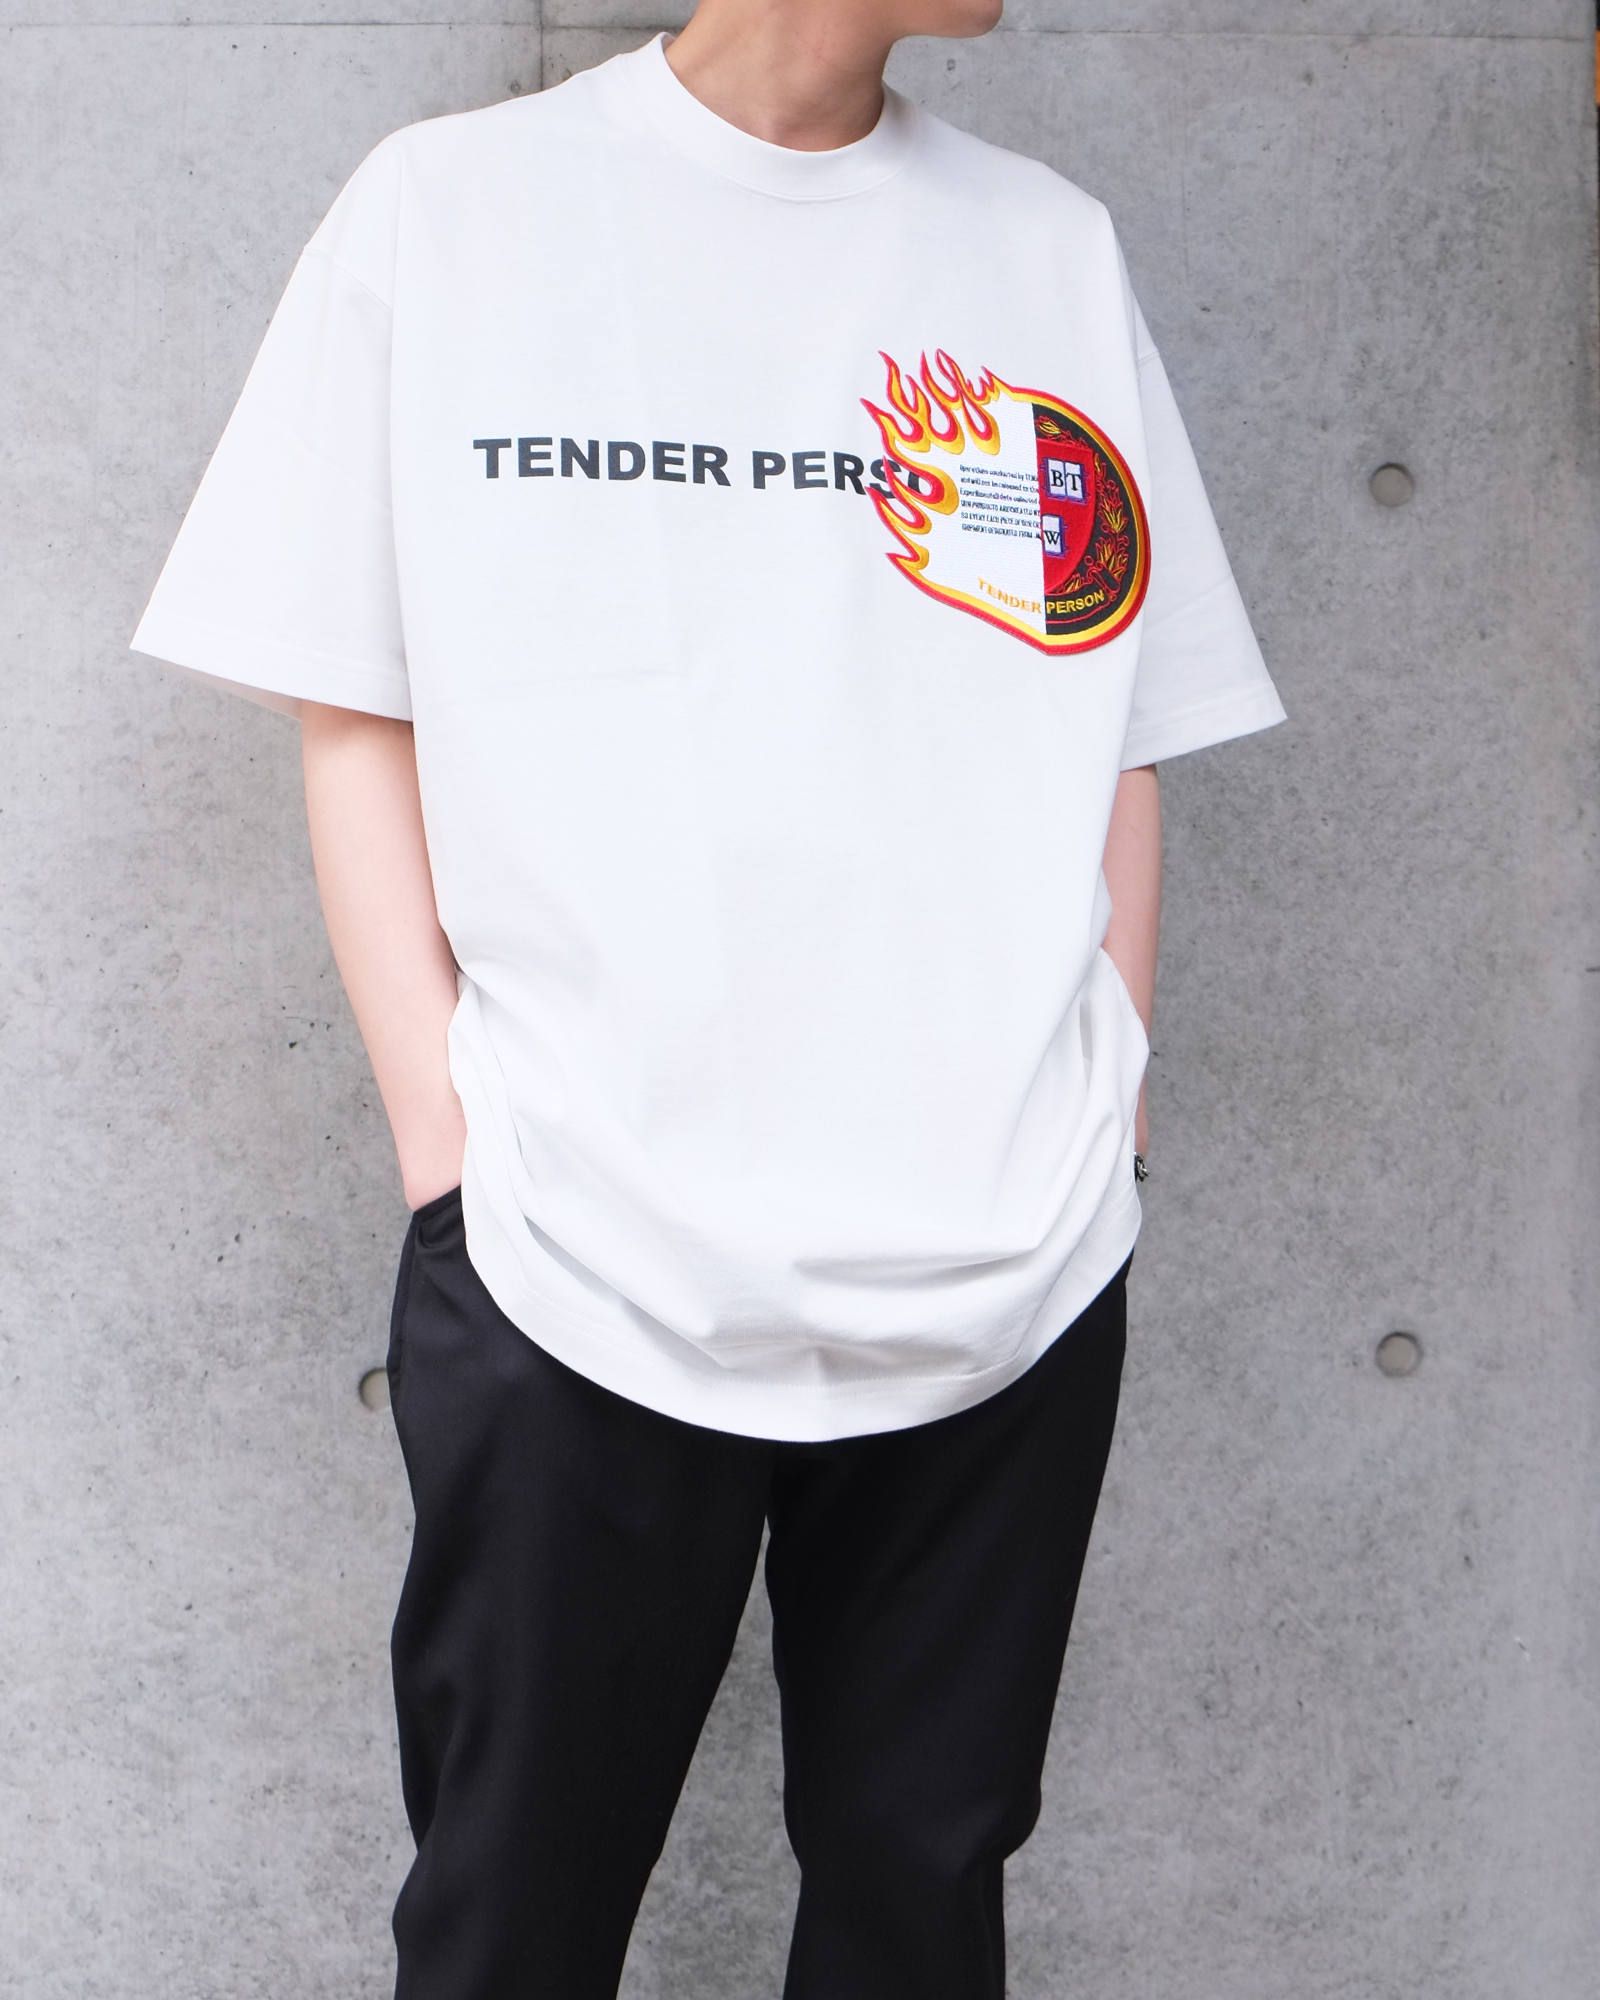 テンダーパーソン TENDER PERSON 靴下 tender person